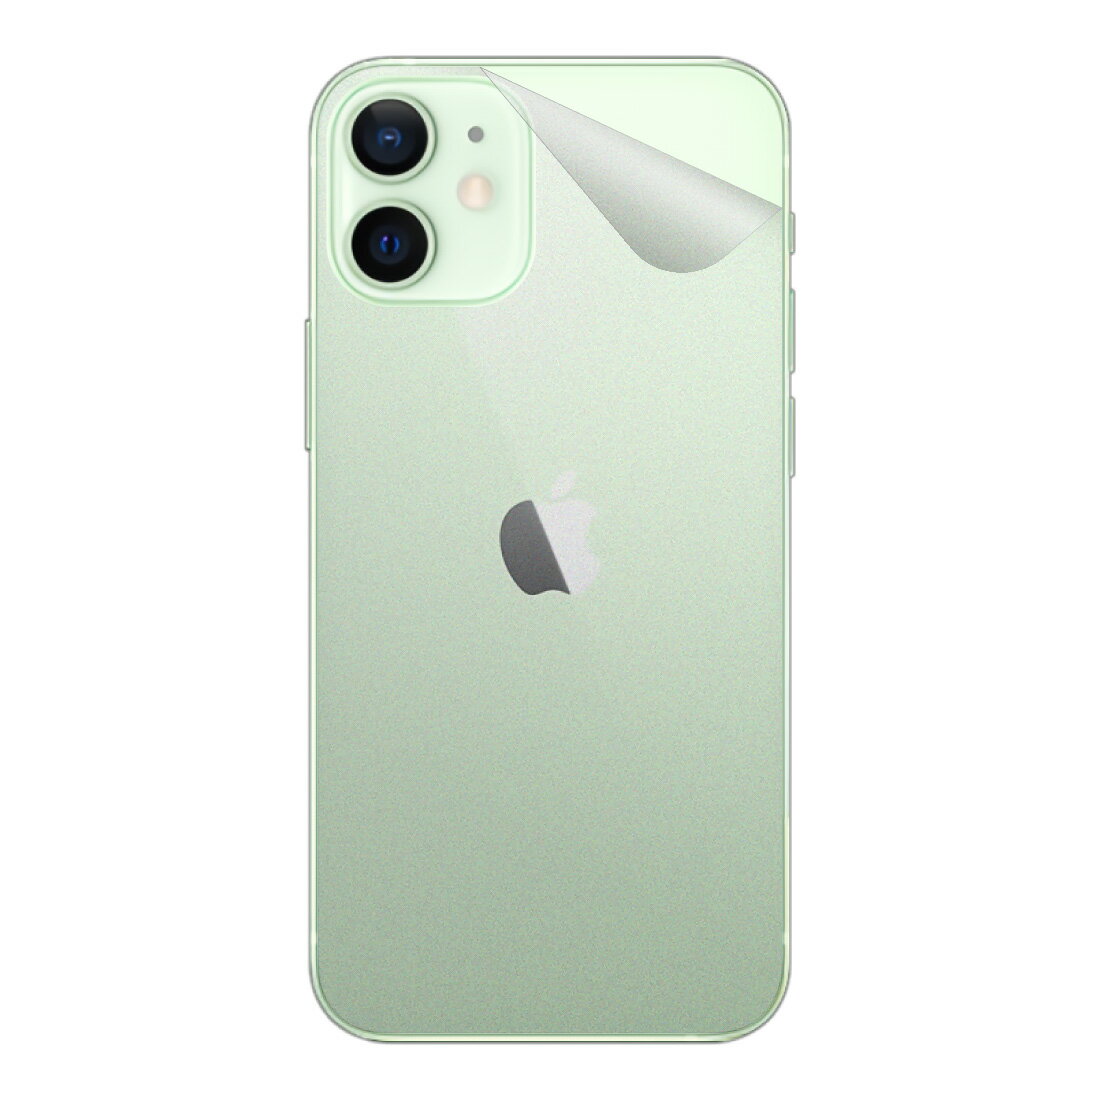 スキンシール iPhone 12 mini 【透明・すりガラス調】 日本製 自社製造直販